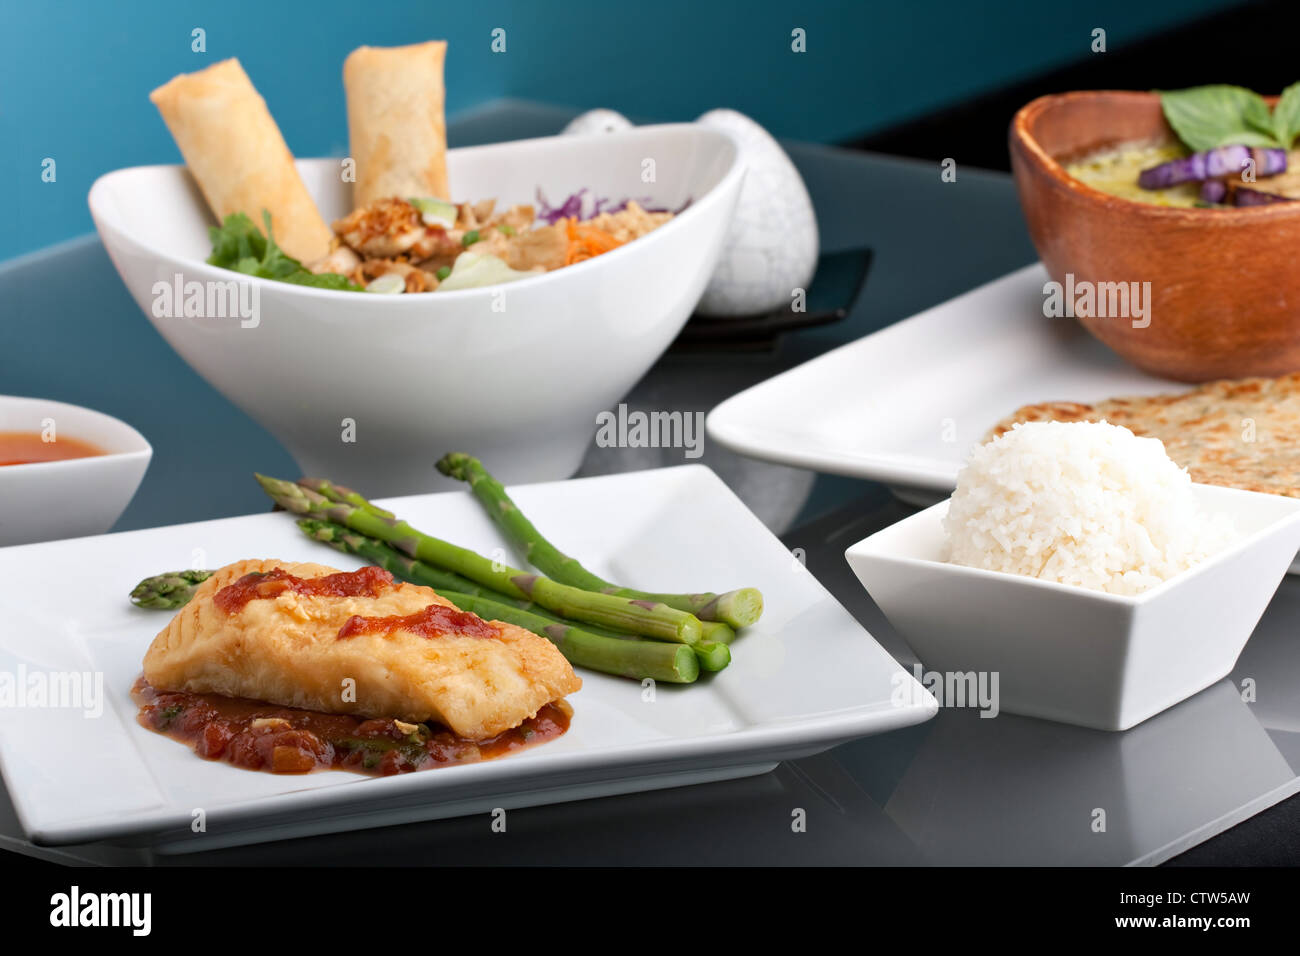 Recién preparado lubina estilo tailandés, cena de pescado con espárragos y aperitivo con una presentación contemporánea. Foto de stock